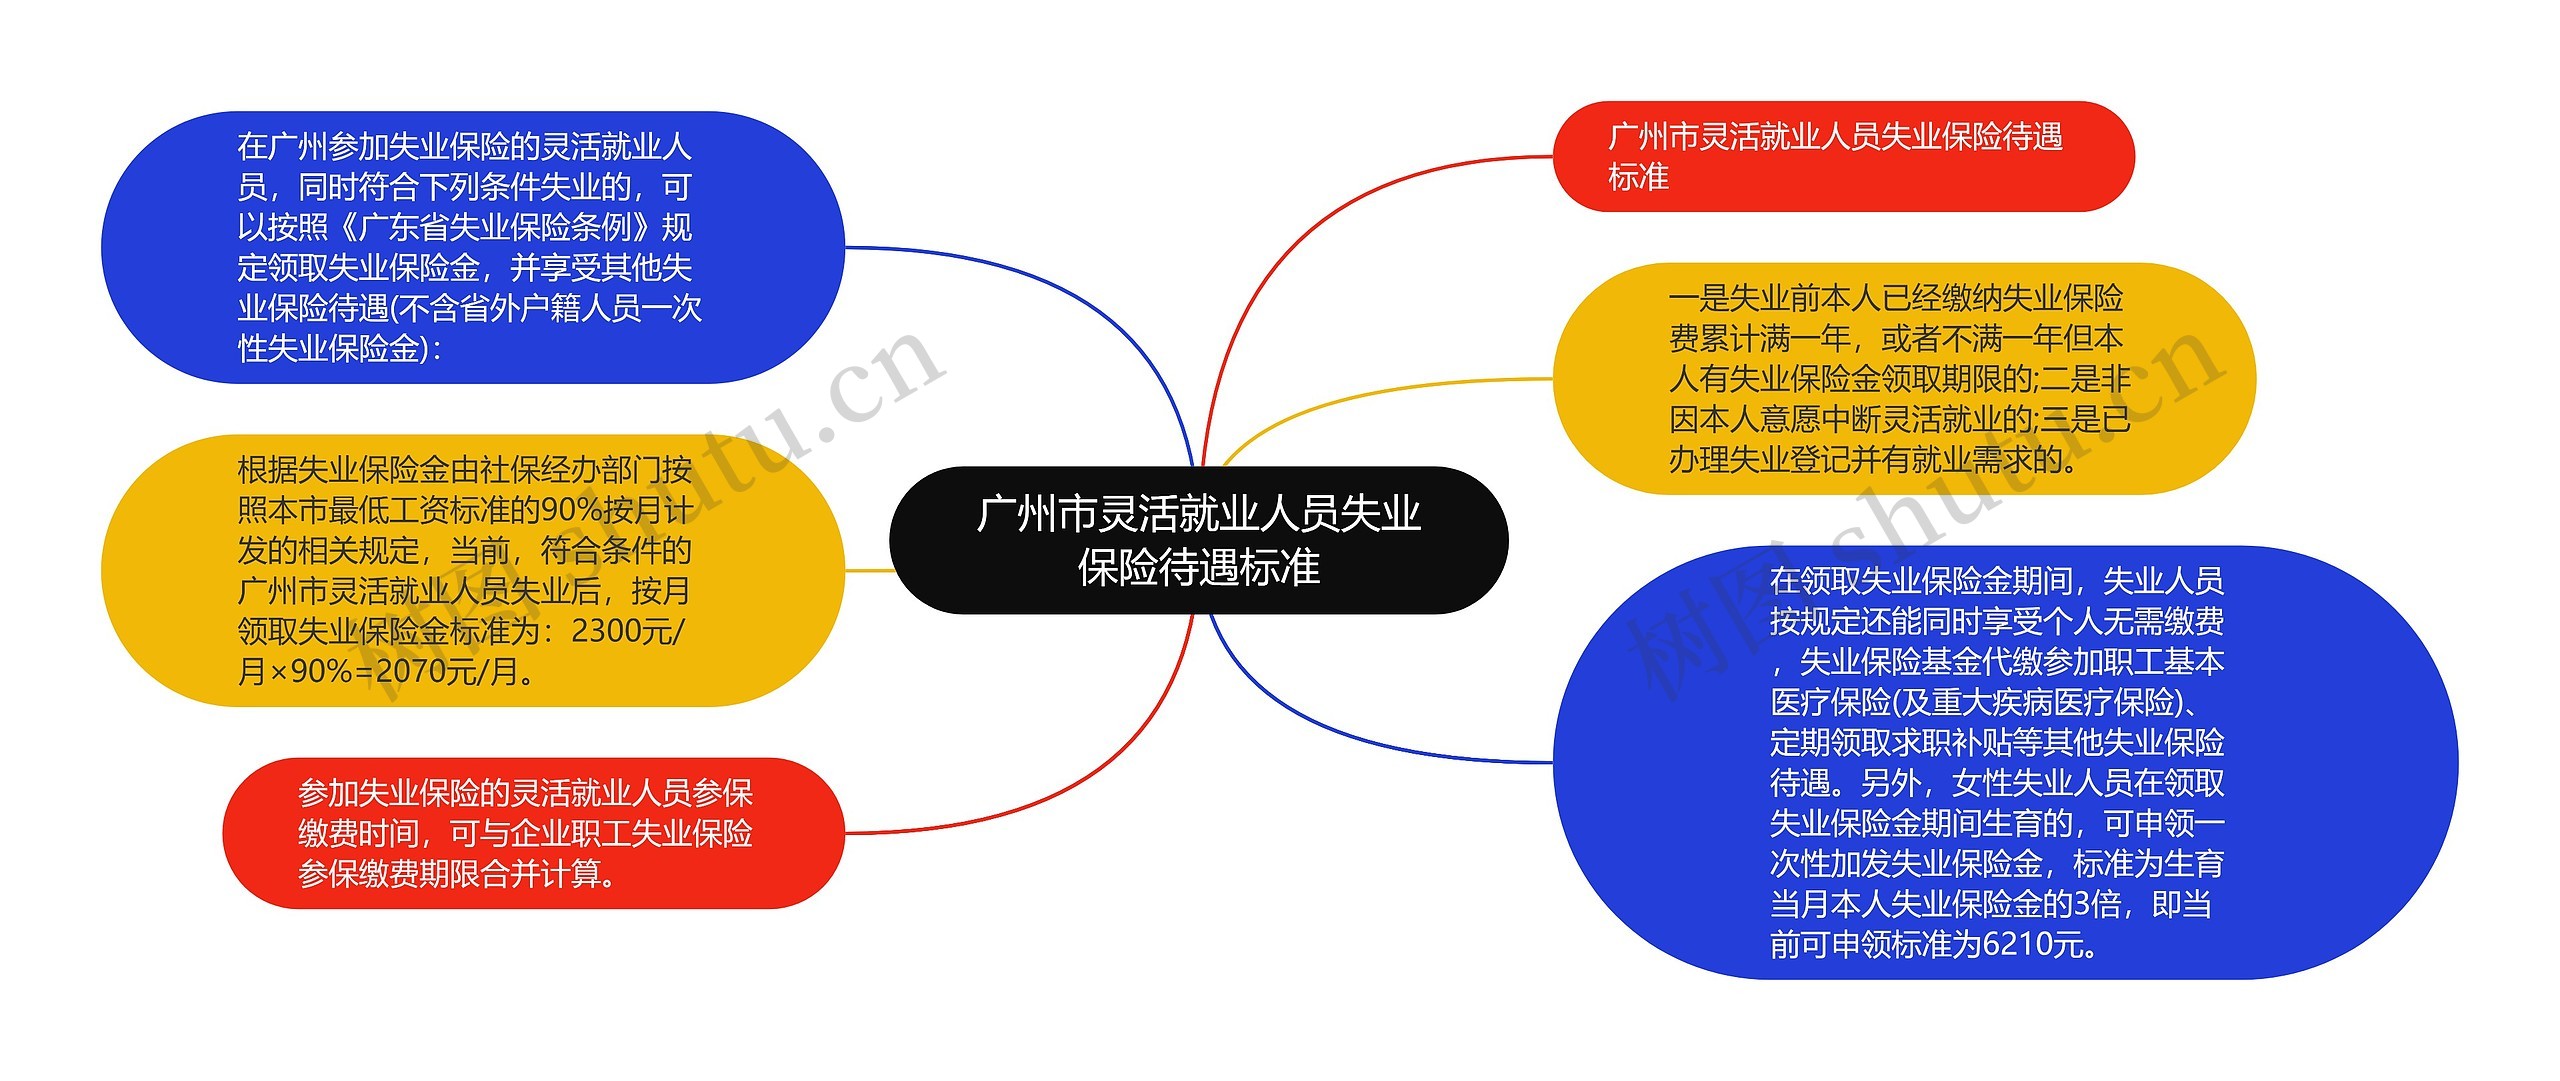 广州市灵活就业人员失业保险待遇标准思维导图